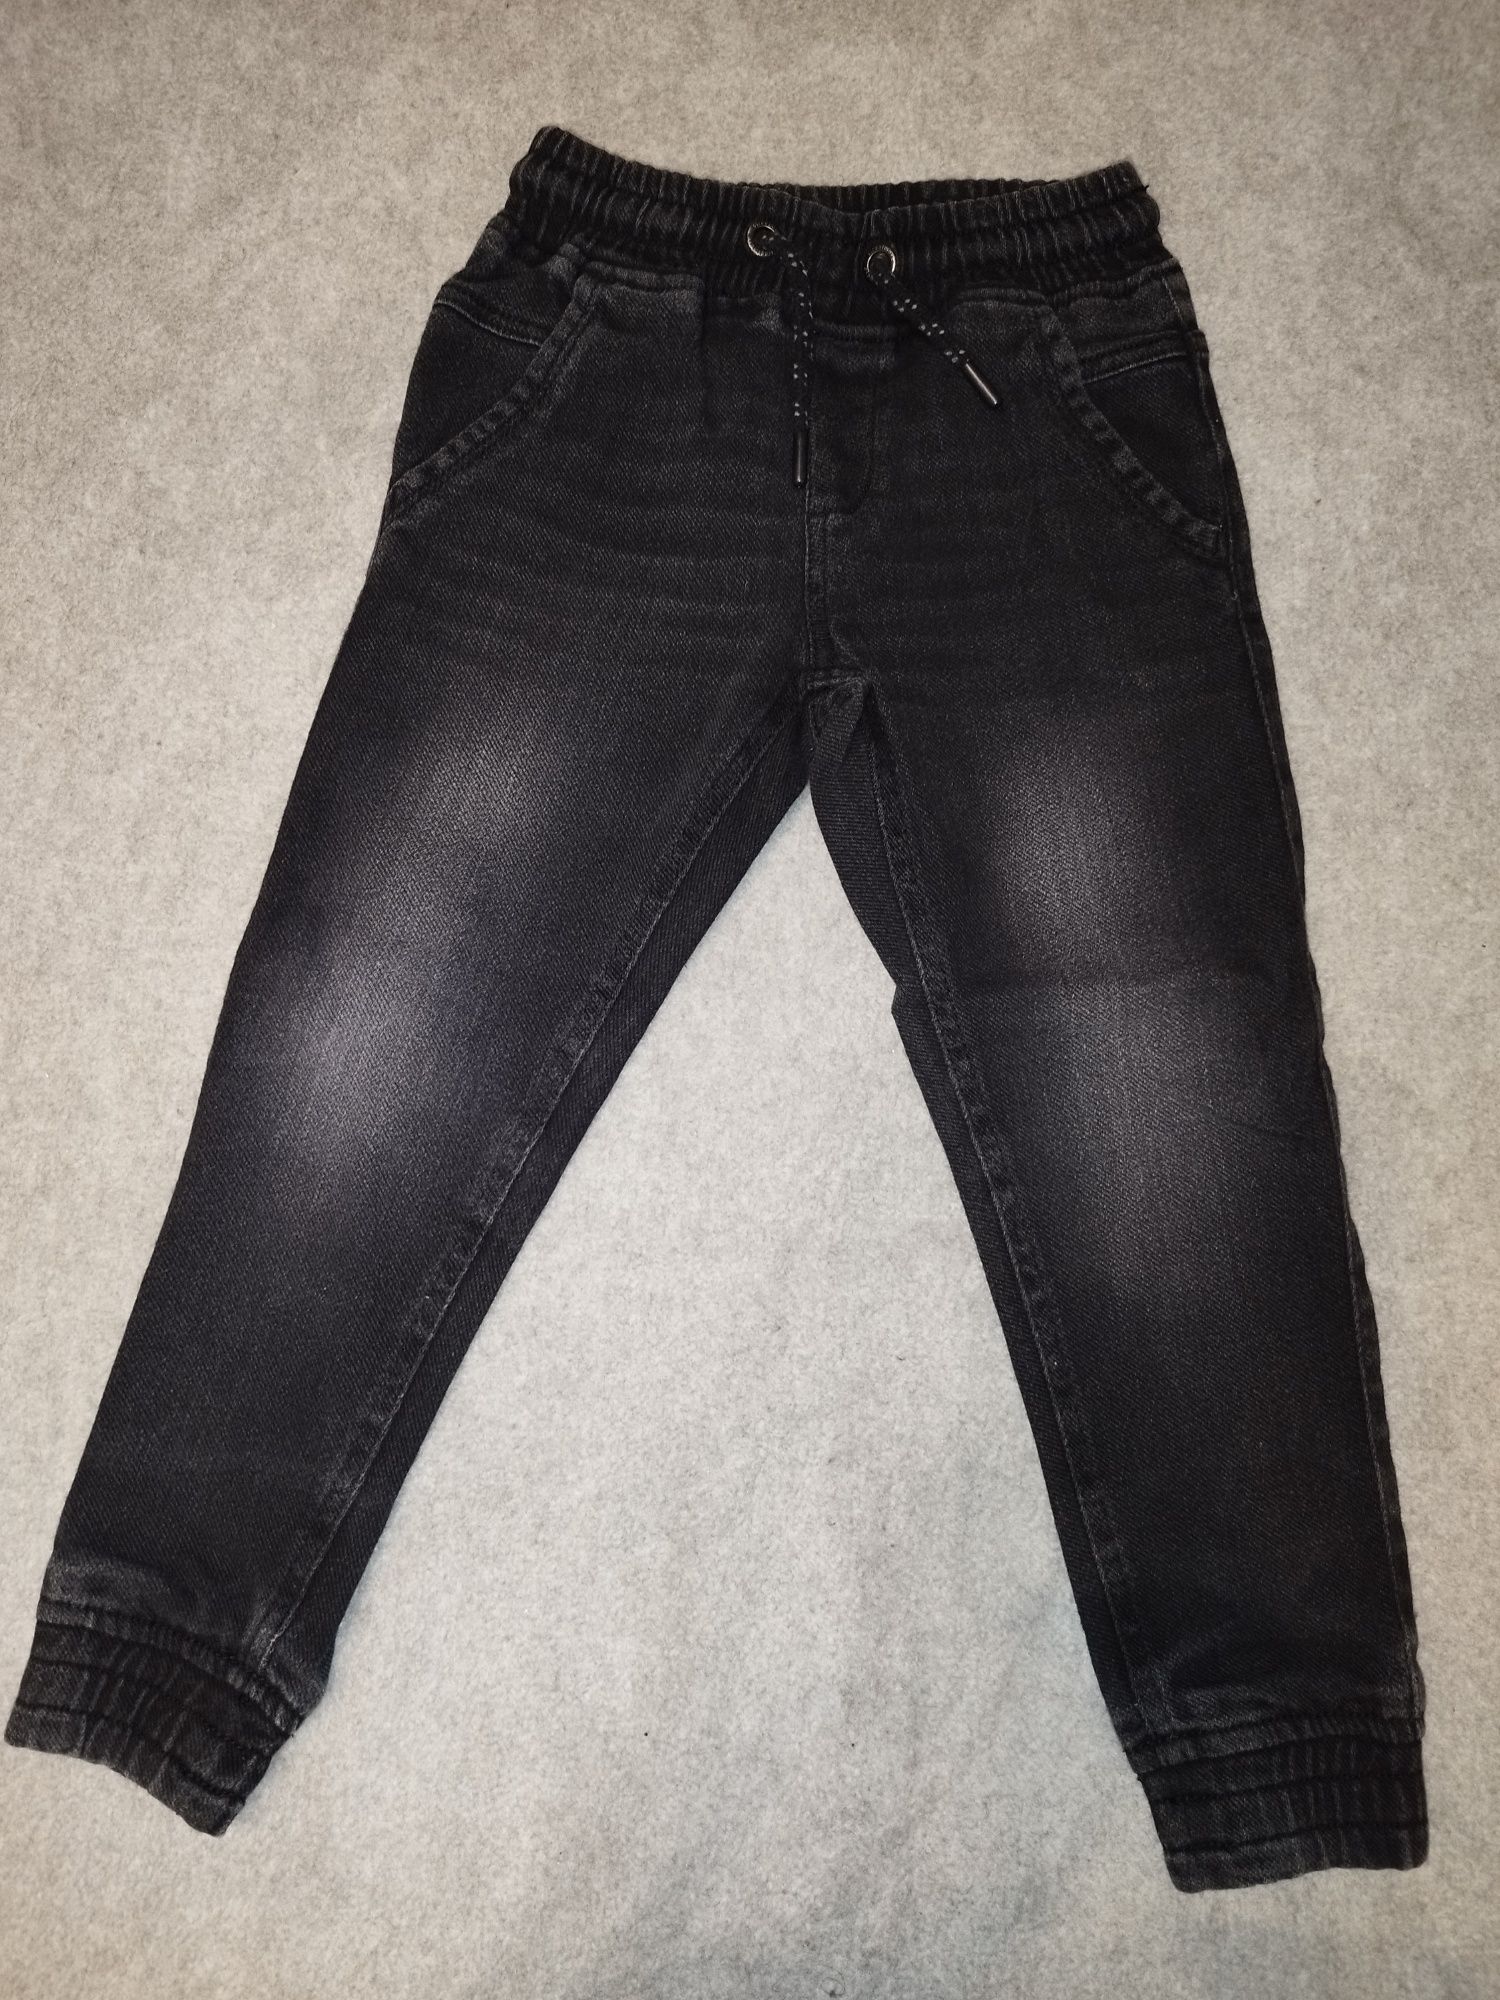 Czarne jeansy na gumce, r. 122